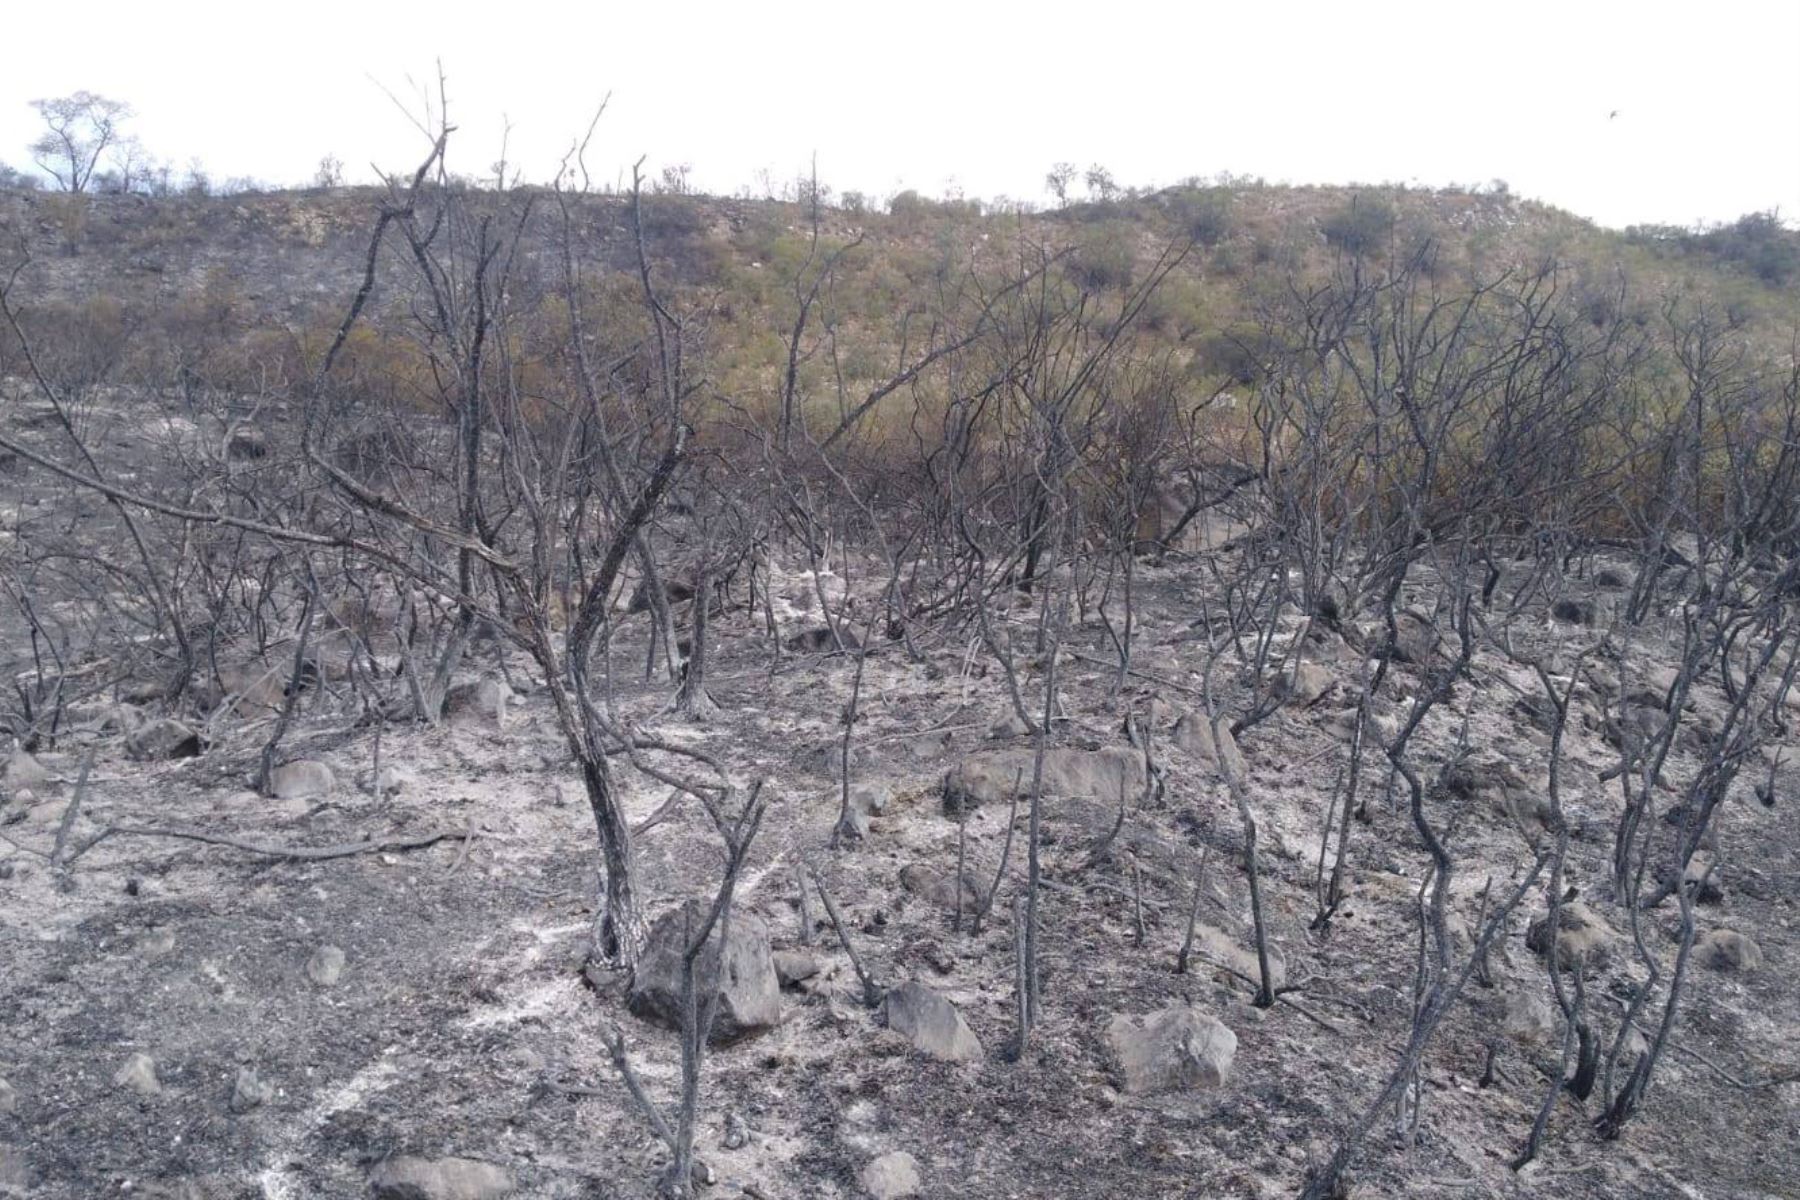 Tras una ardua labor se logró extinguir el incendio forestal que afectó 40 hectáreas de pastos naturales en la zona de amortiguamiento del parque nacional Huascarán. Foto: Cortesía Gonzalo Horna